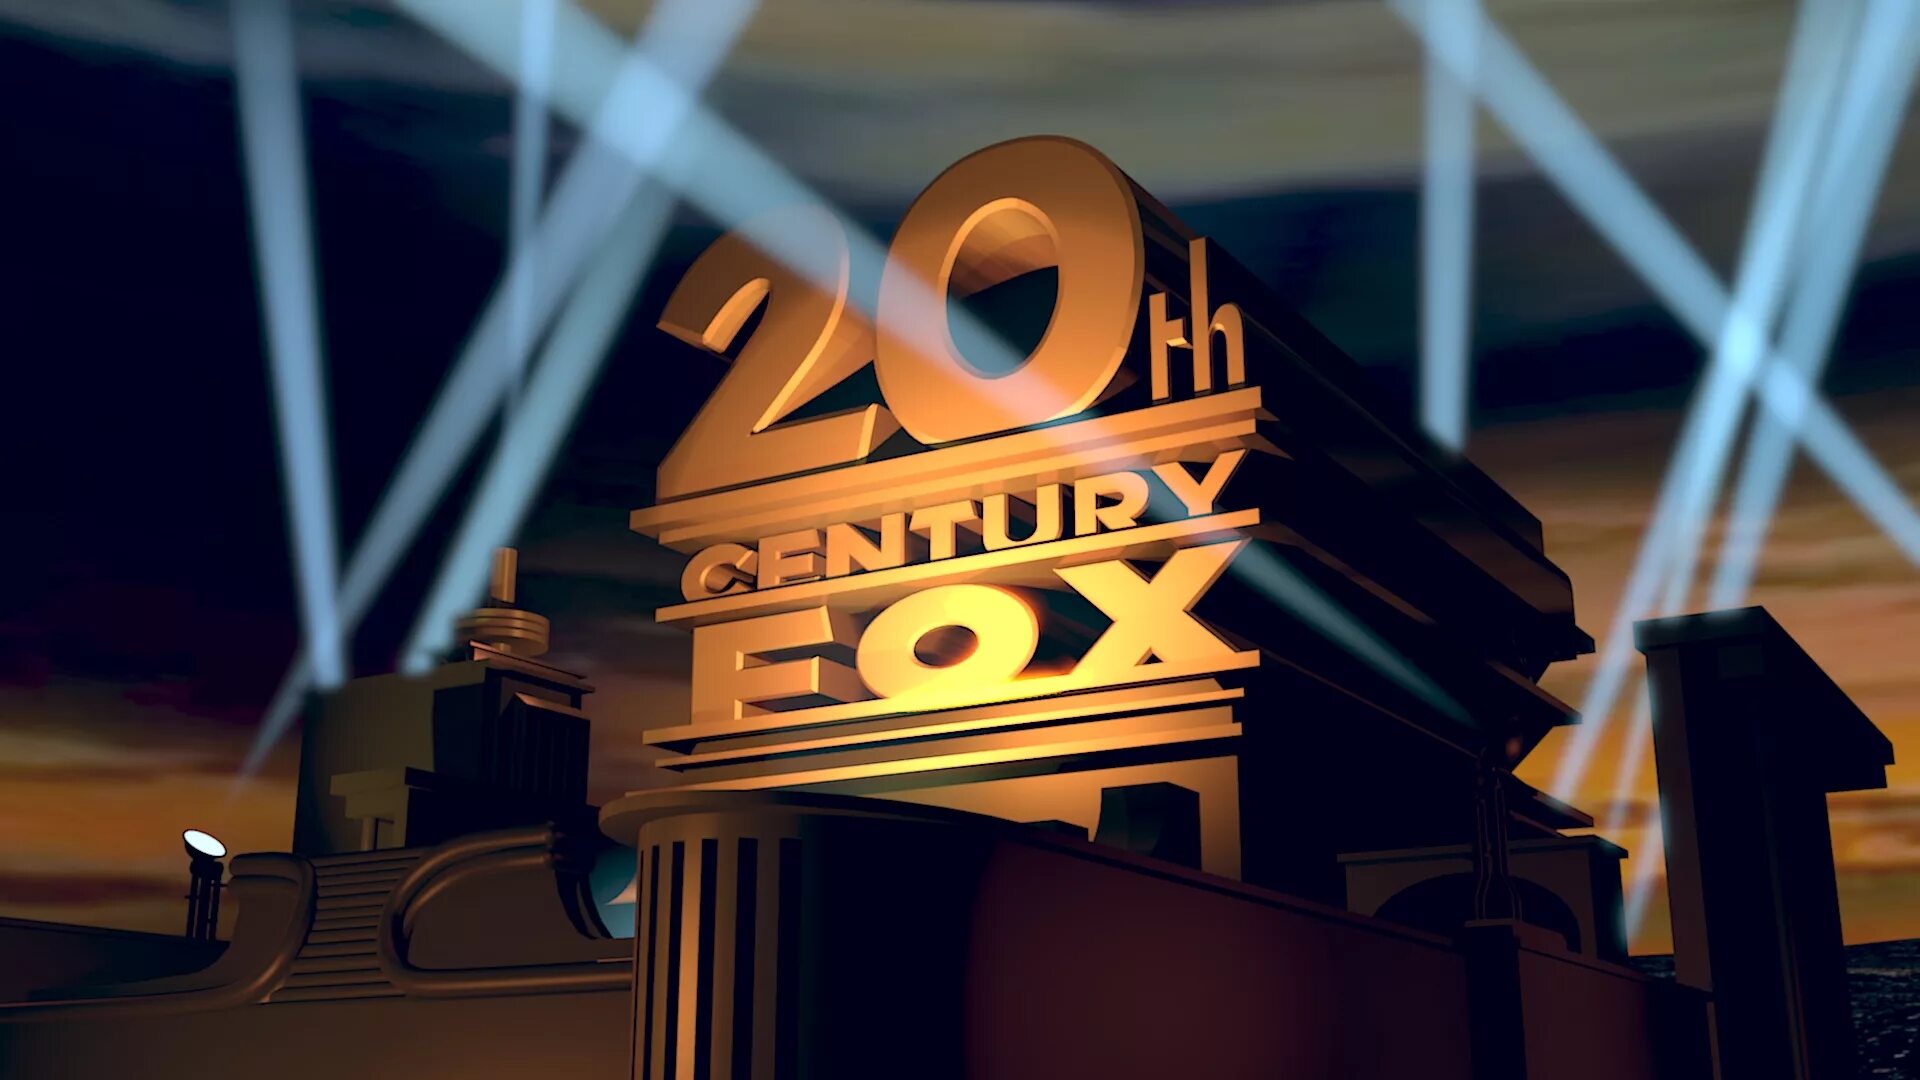 20 Век Центури Фокс. 20 Век Фокс Пикчерз. Кинокомпания 20 век Фокс представляет. Студия 20th Century Fox. Th fox